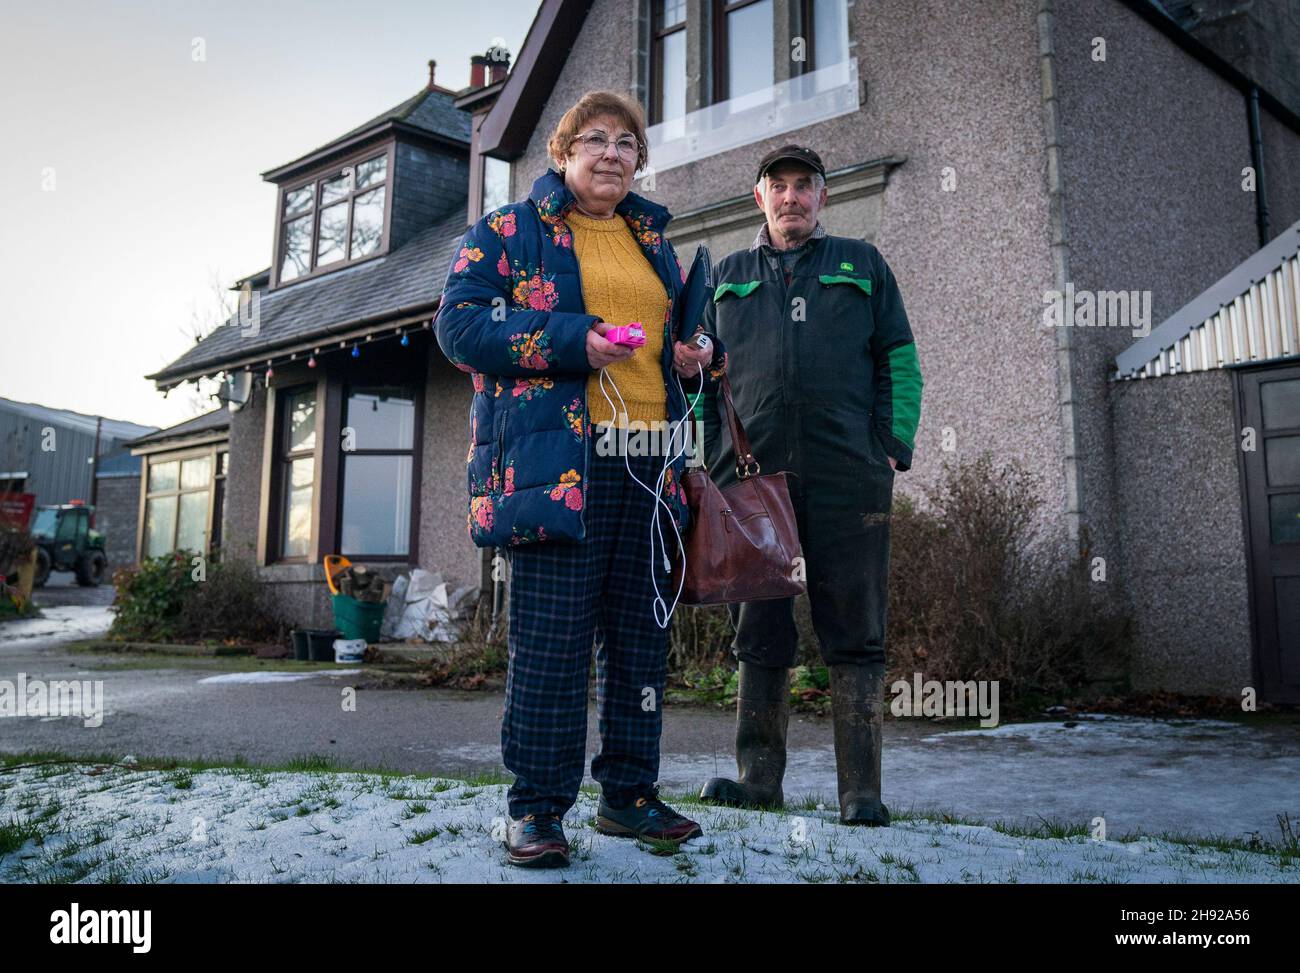 Jim et Belinda Muir, qui vivent à Honeyneuk Farm, Maud, Aberdeenshire, sont sans pouvoir depuis plus d'une semaine après la tempête Arwen.Date de la photo: Vendredi 3 décembre 2021. Banque D'Images